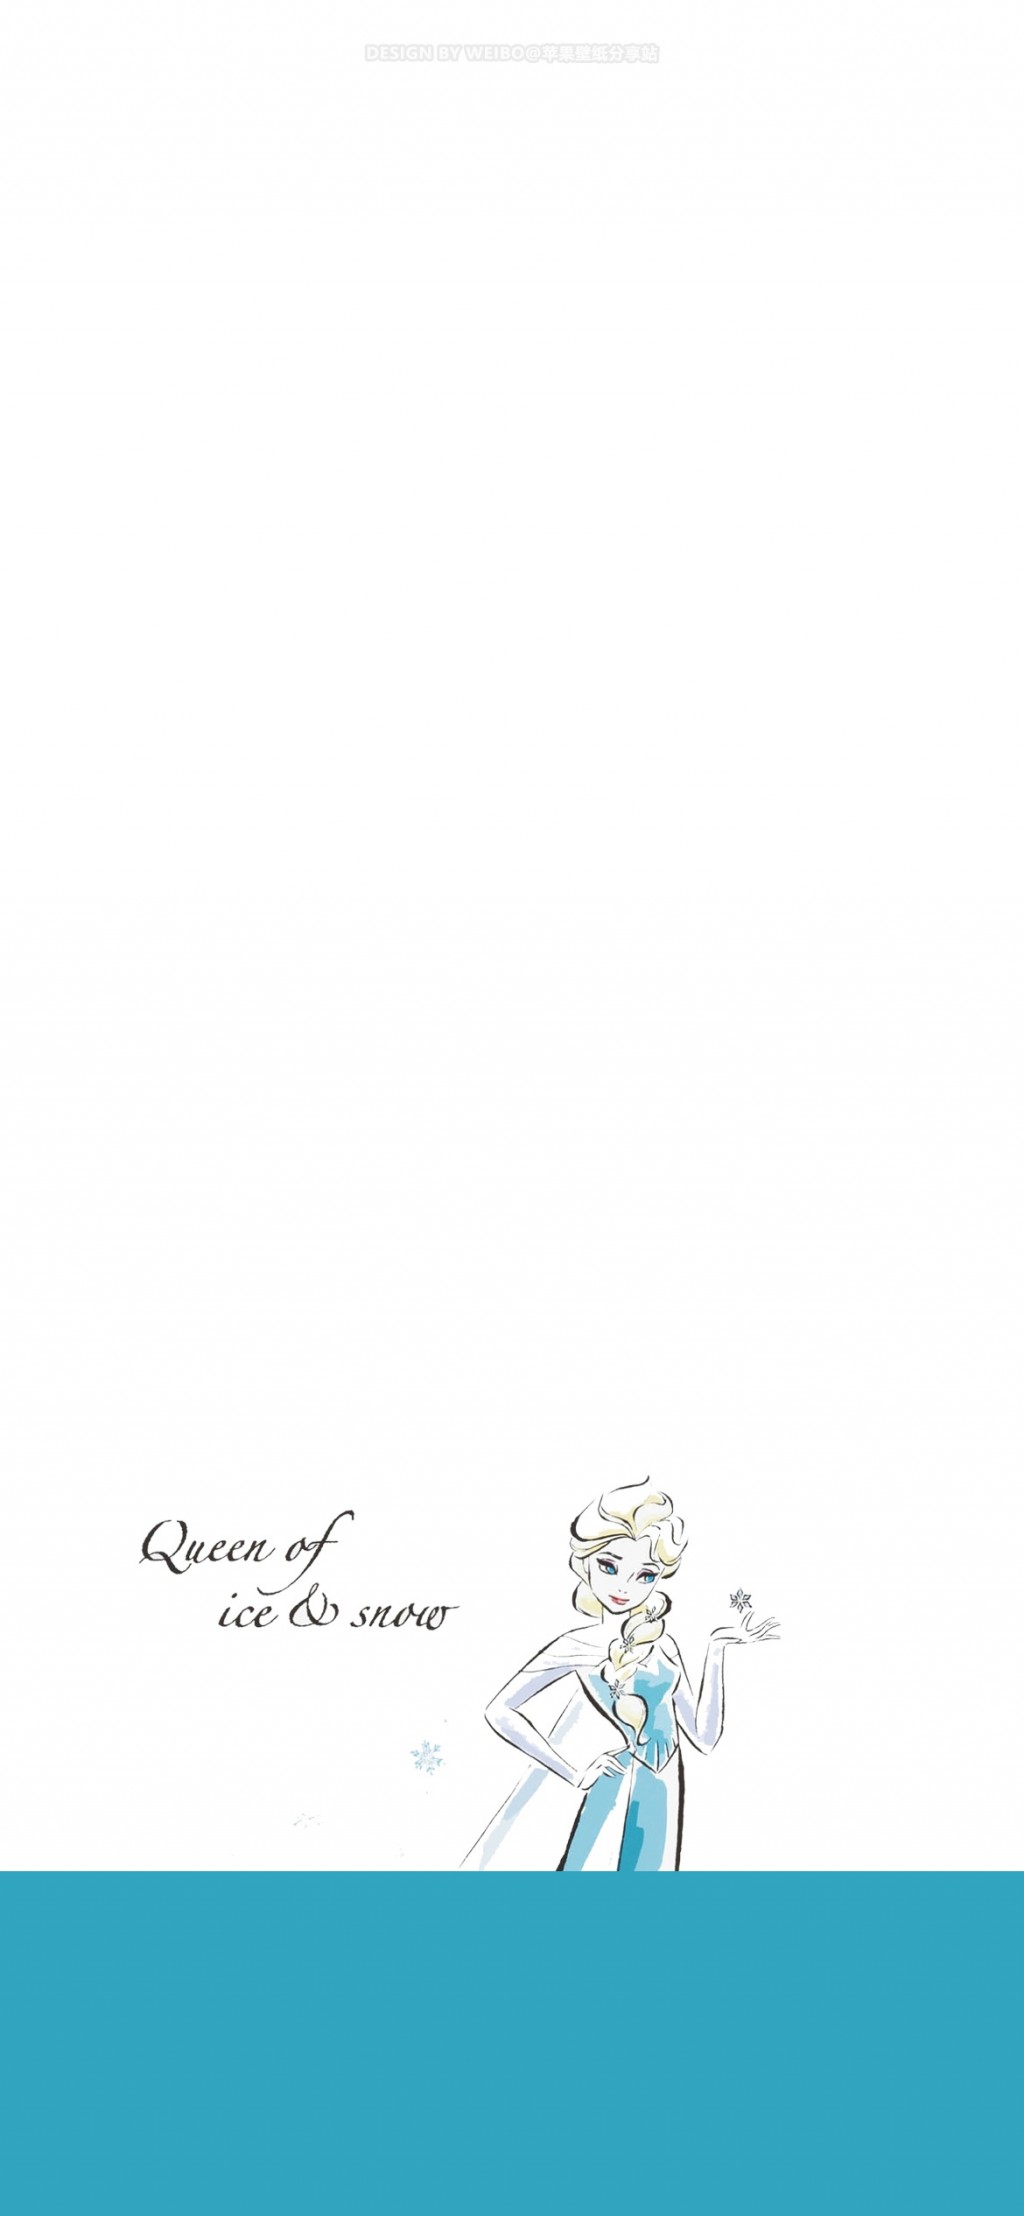 迪士尼公主简约手绘插画手机壁纸